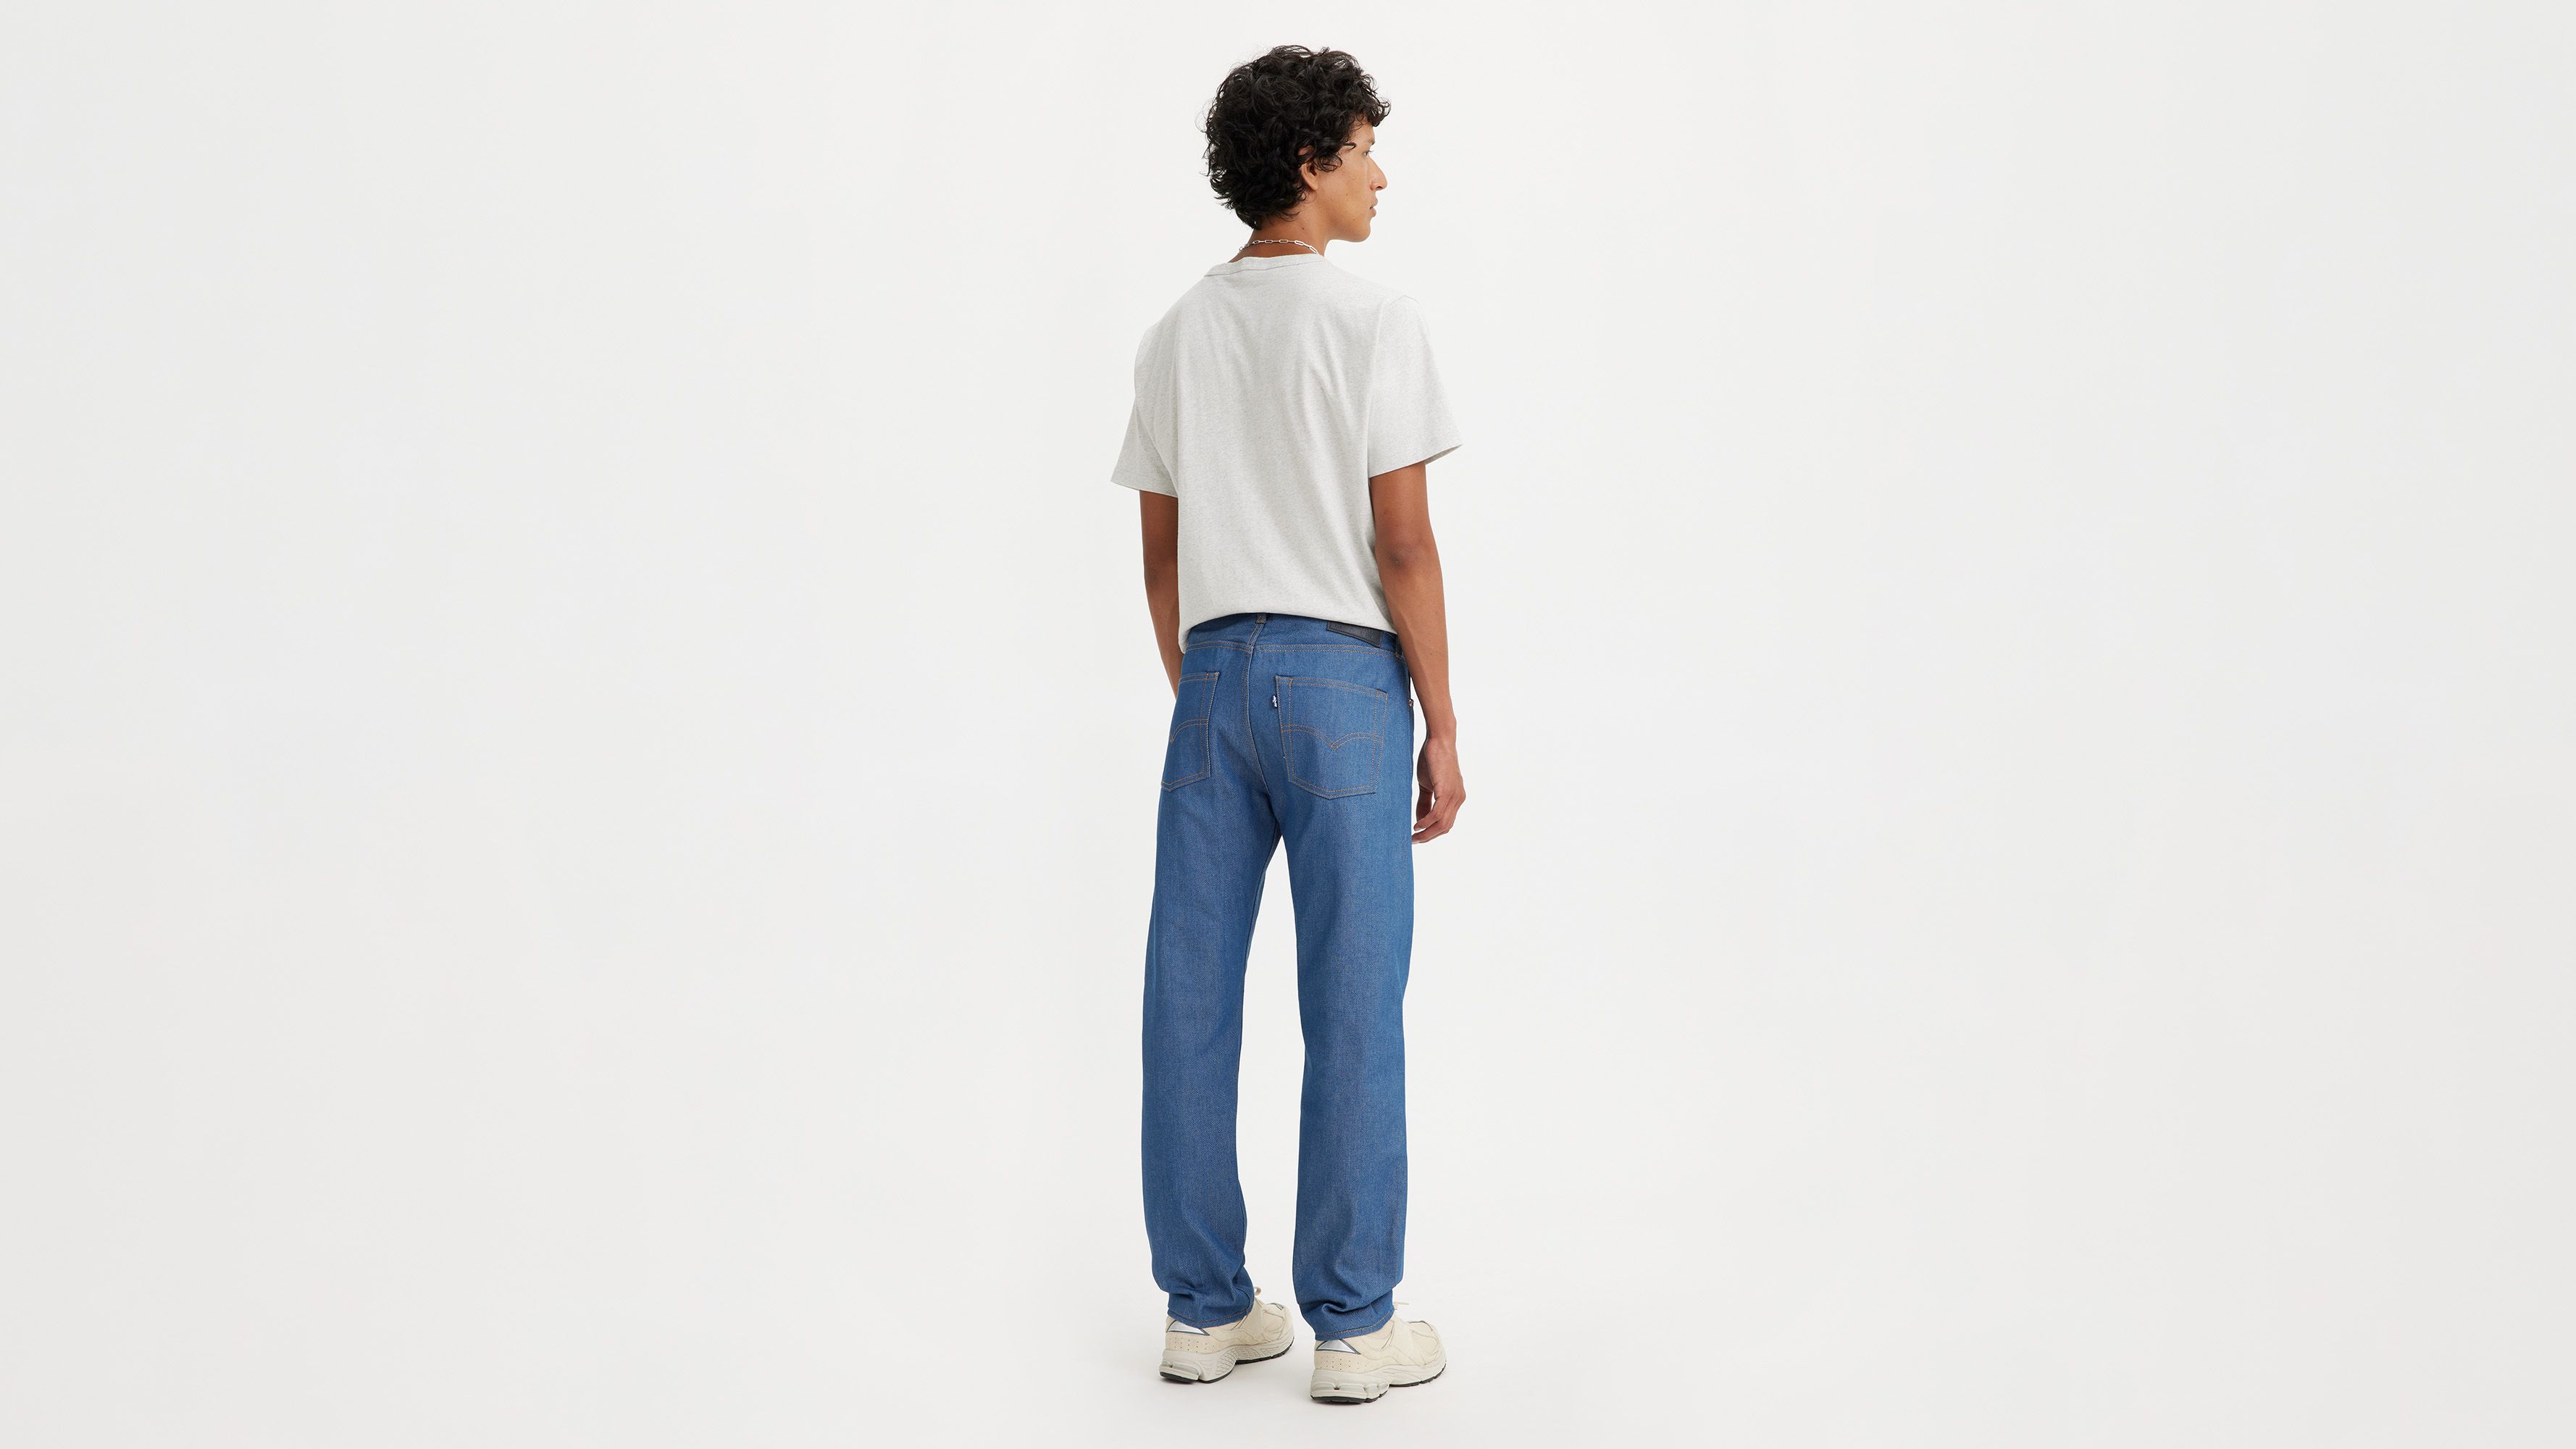 1980s 501® Original Fit Selvedge Men's Jeans - Medium Wash 